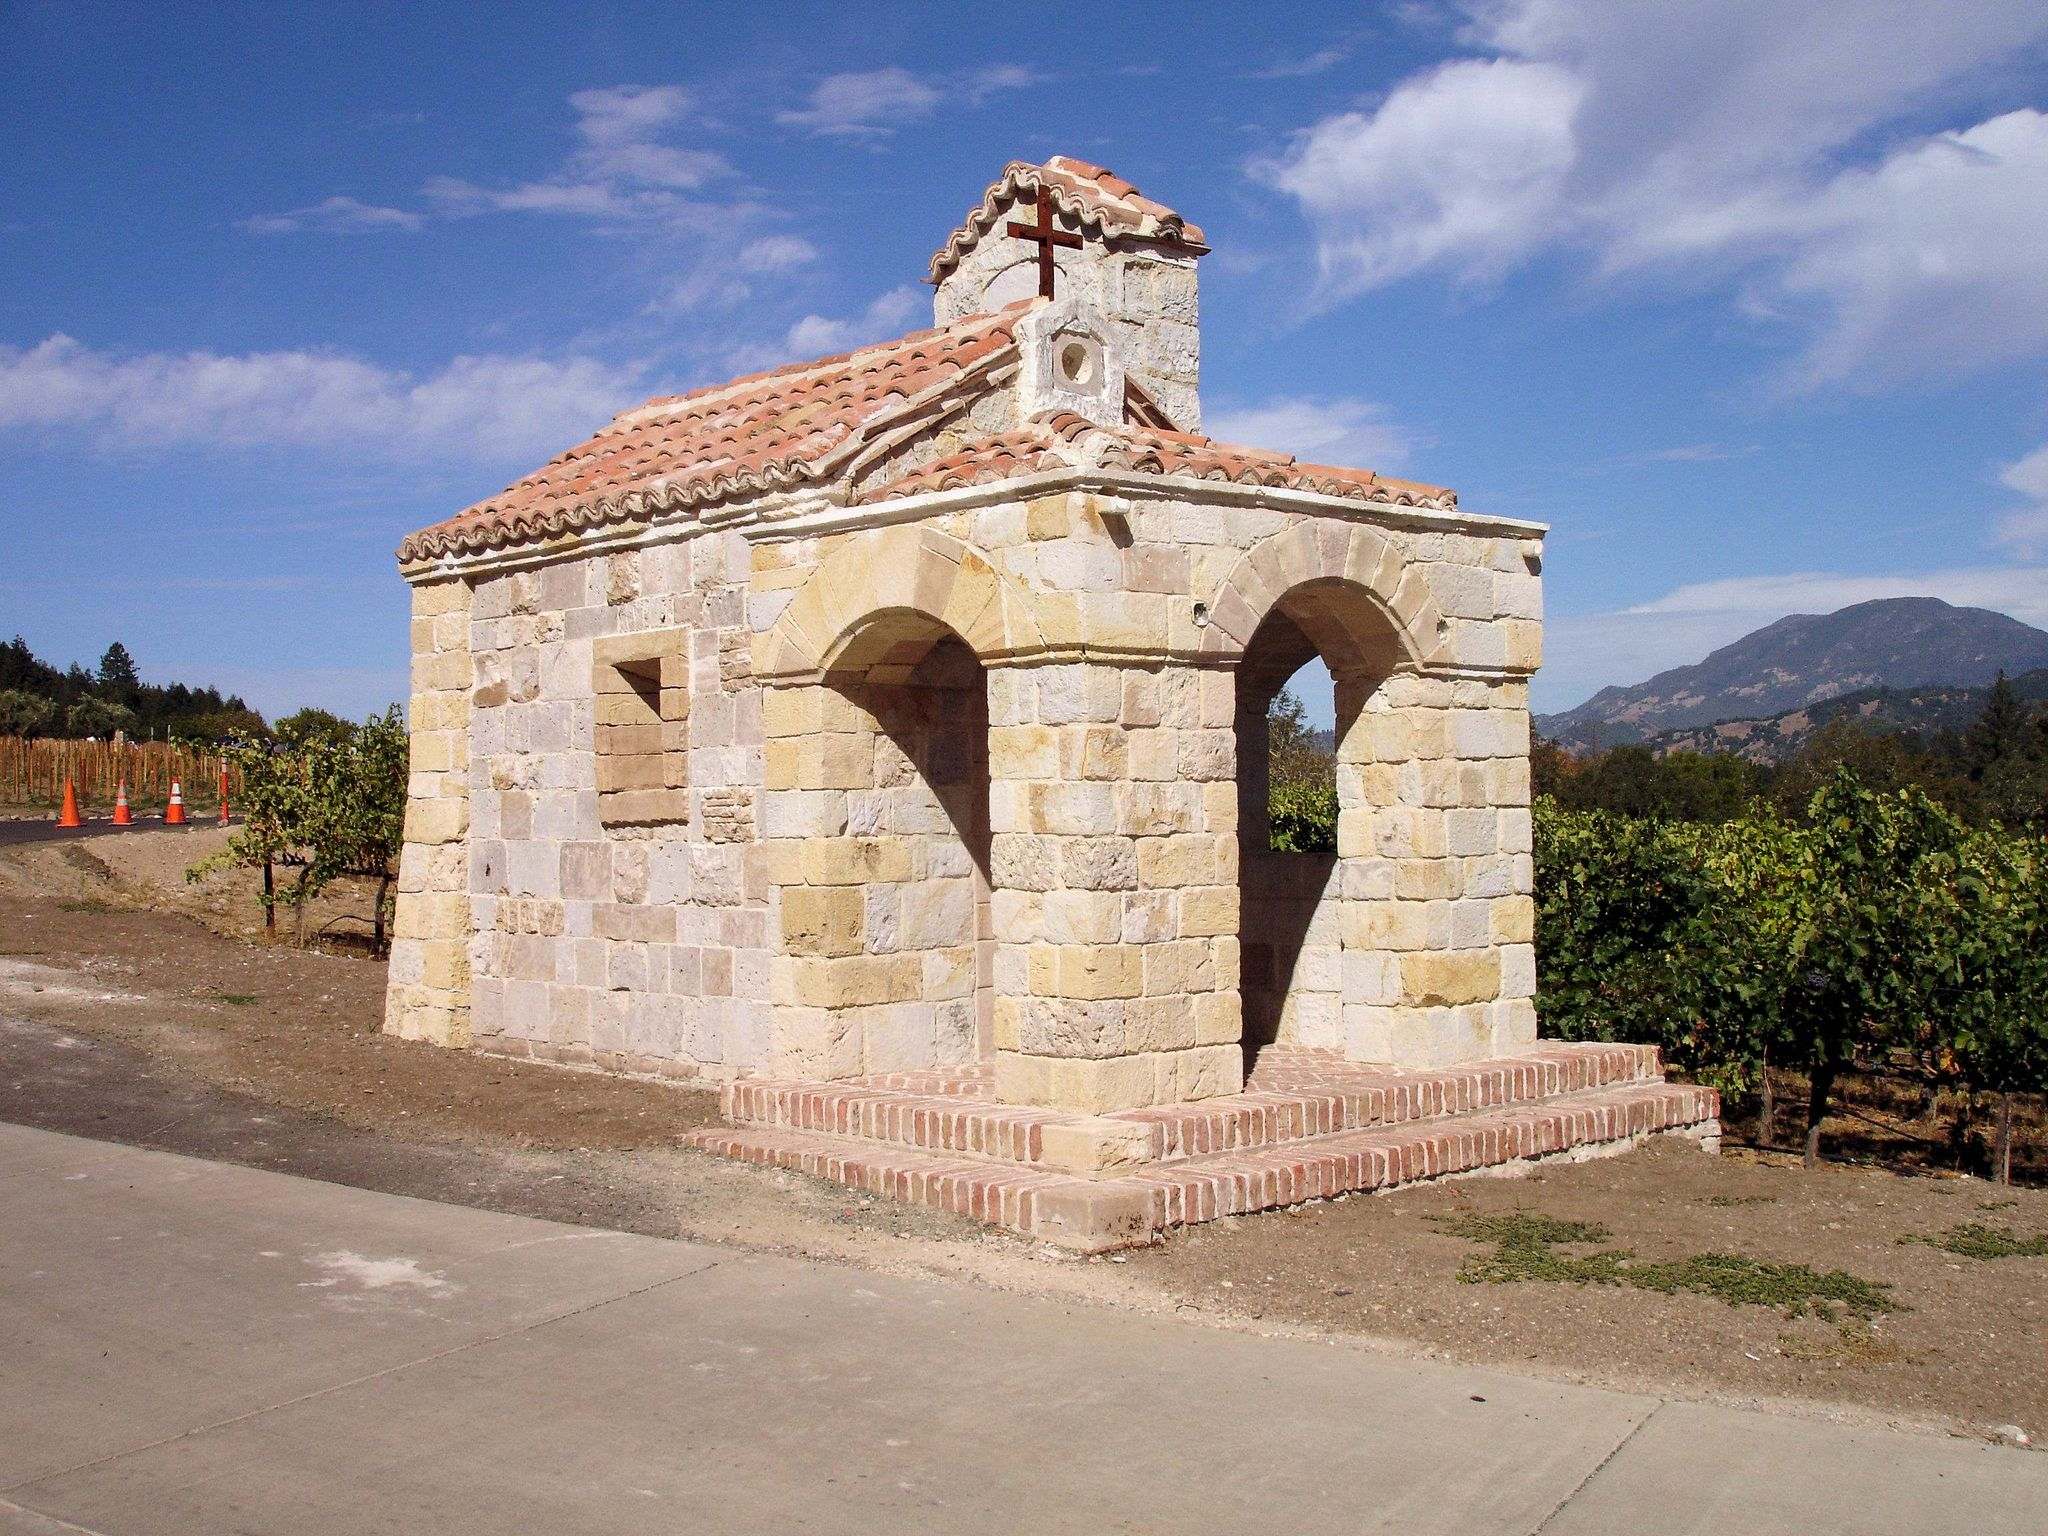 castello di amorosa5 Castello di Amorosa Winery in Napa Valley, California